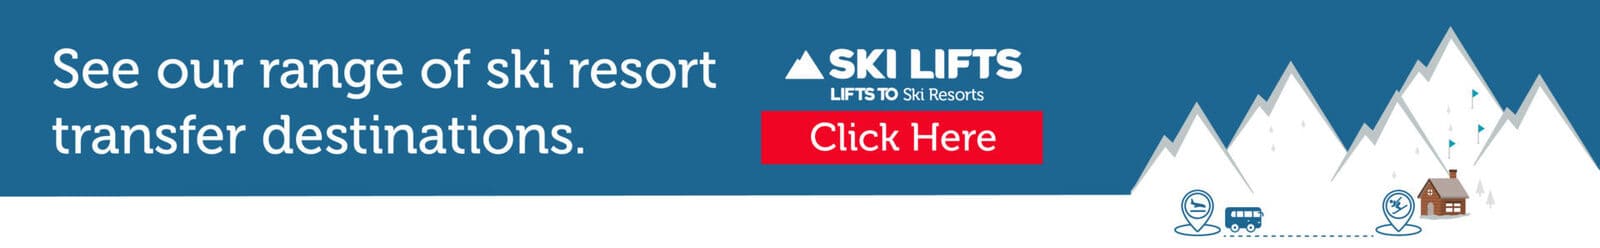 banner-see our full range of ski transfer destinations